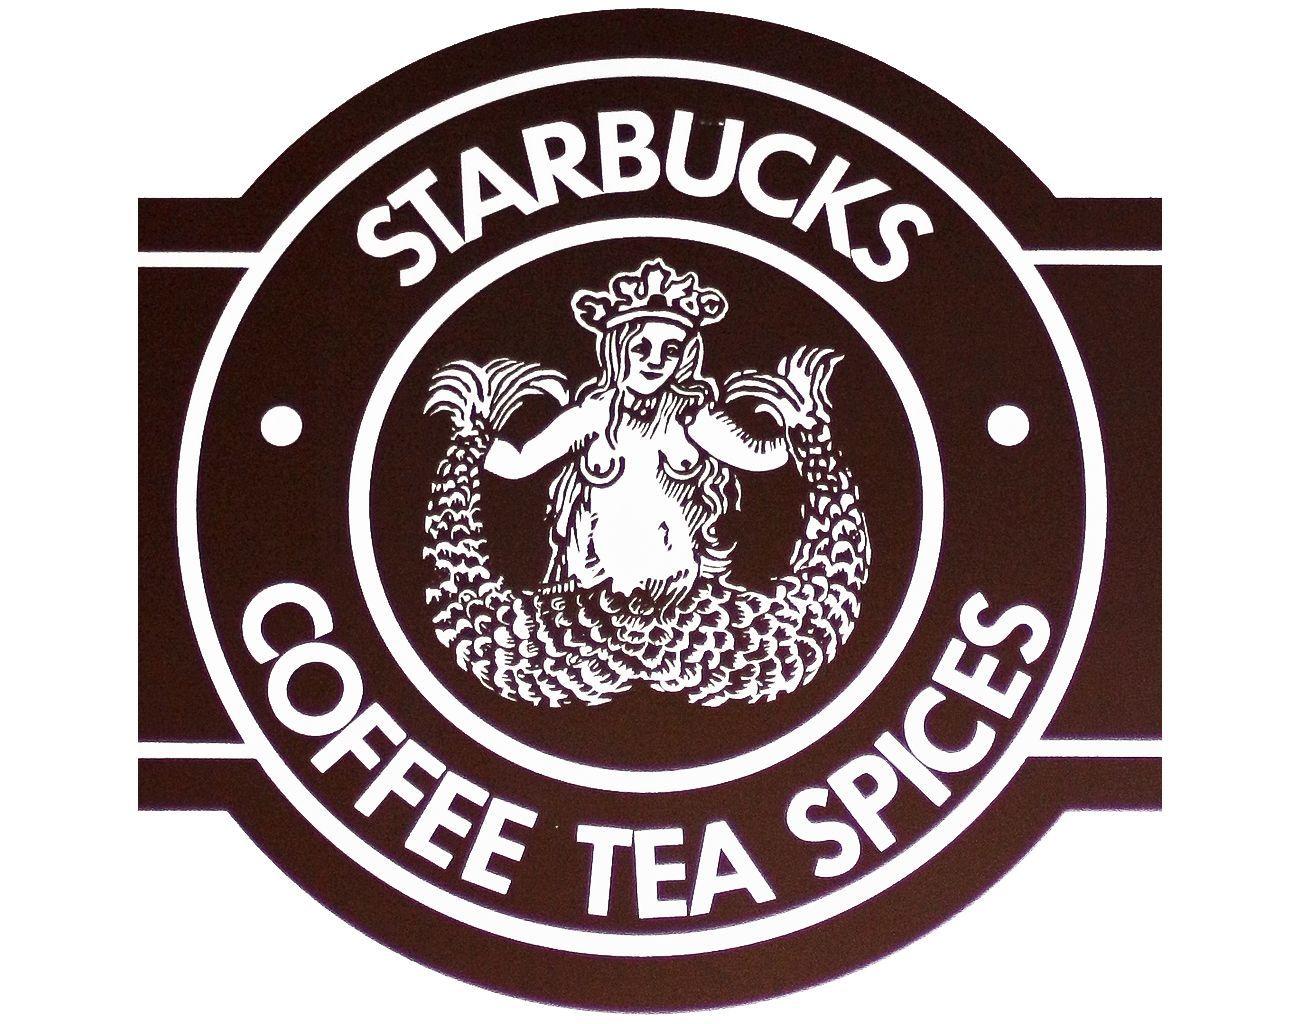 Old Starbucks Logo - old starbucks logo | All logos world | Pinterest | Starbucks logo ...